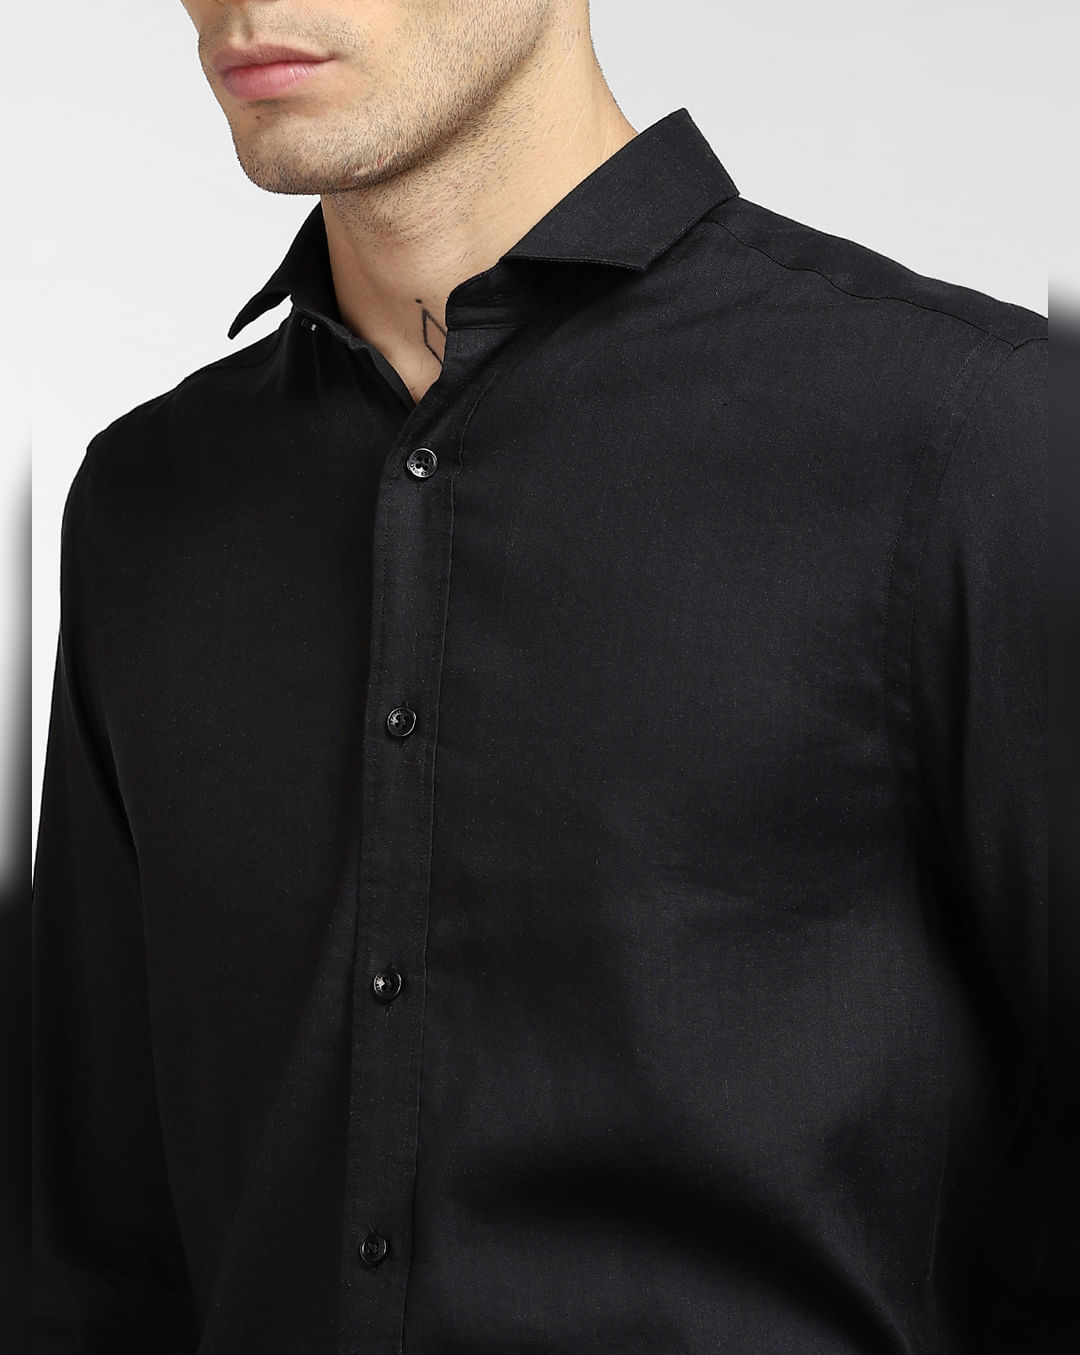 Buy Black Linen Full Sleeves Shirt for Men